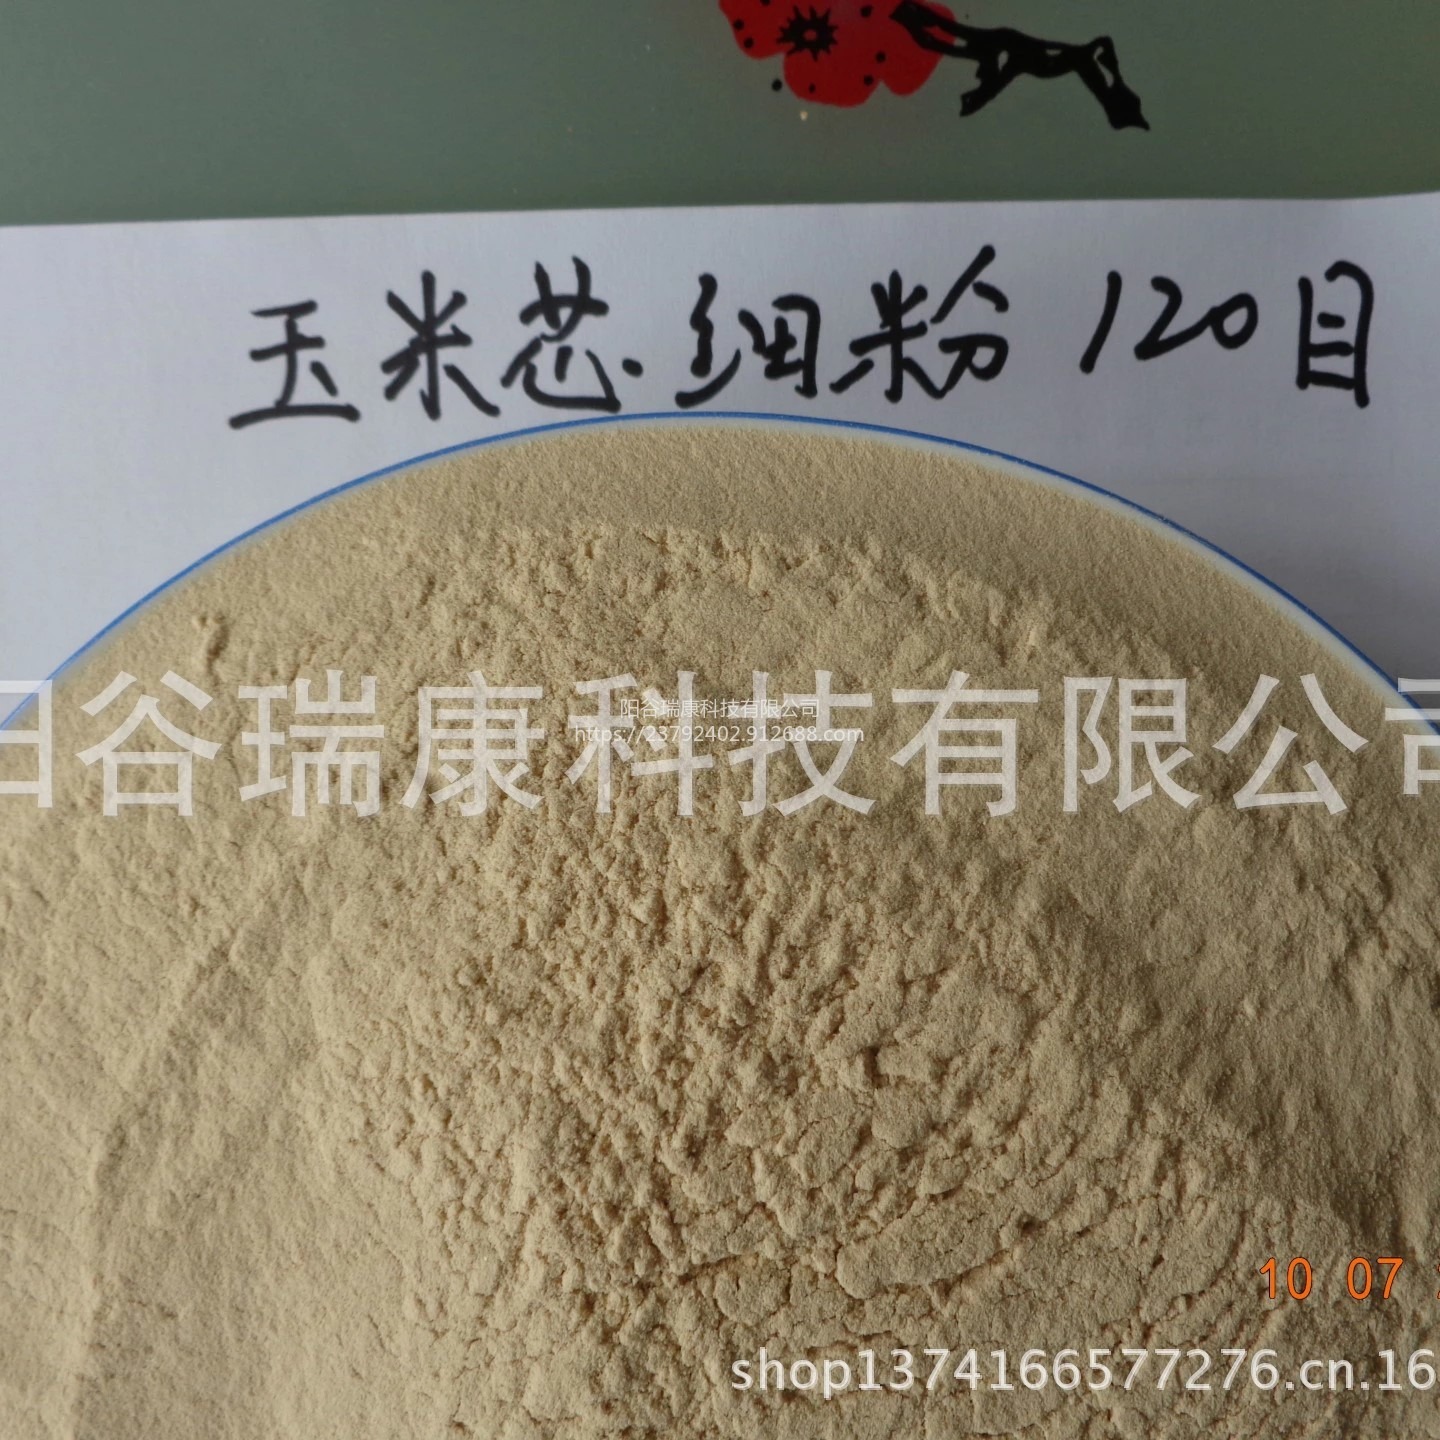 饲料添加玉米芯粉 玉米芯颗粒厂家100目 阳谷瑞康科技有限公司厂家常年销售